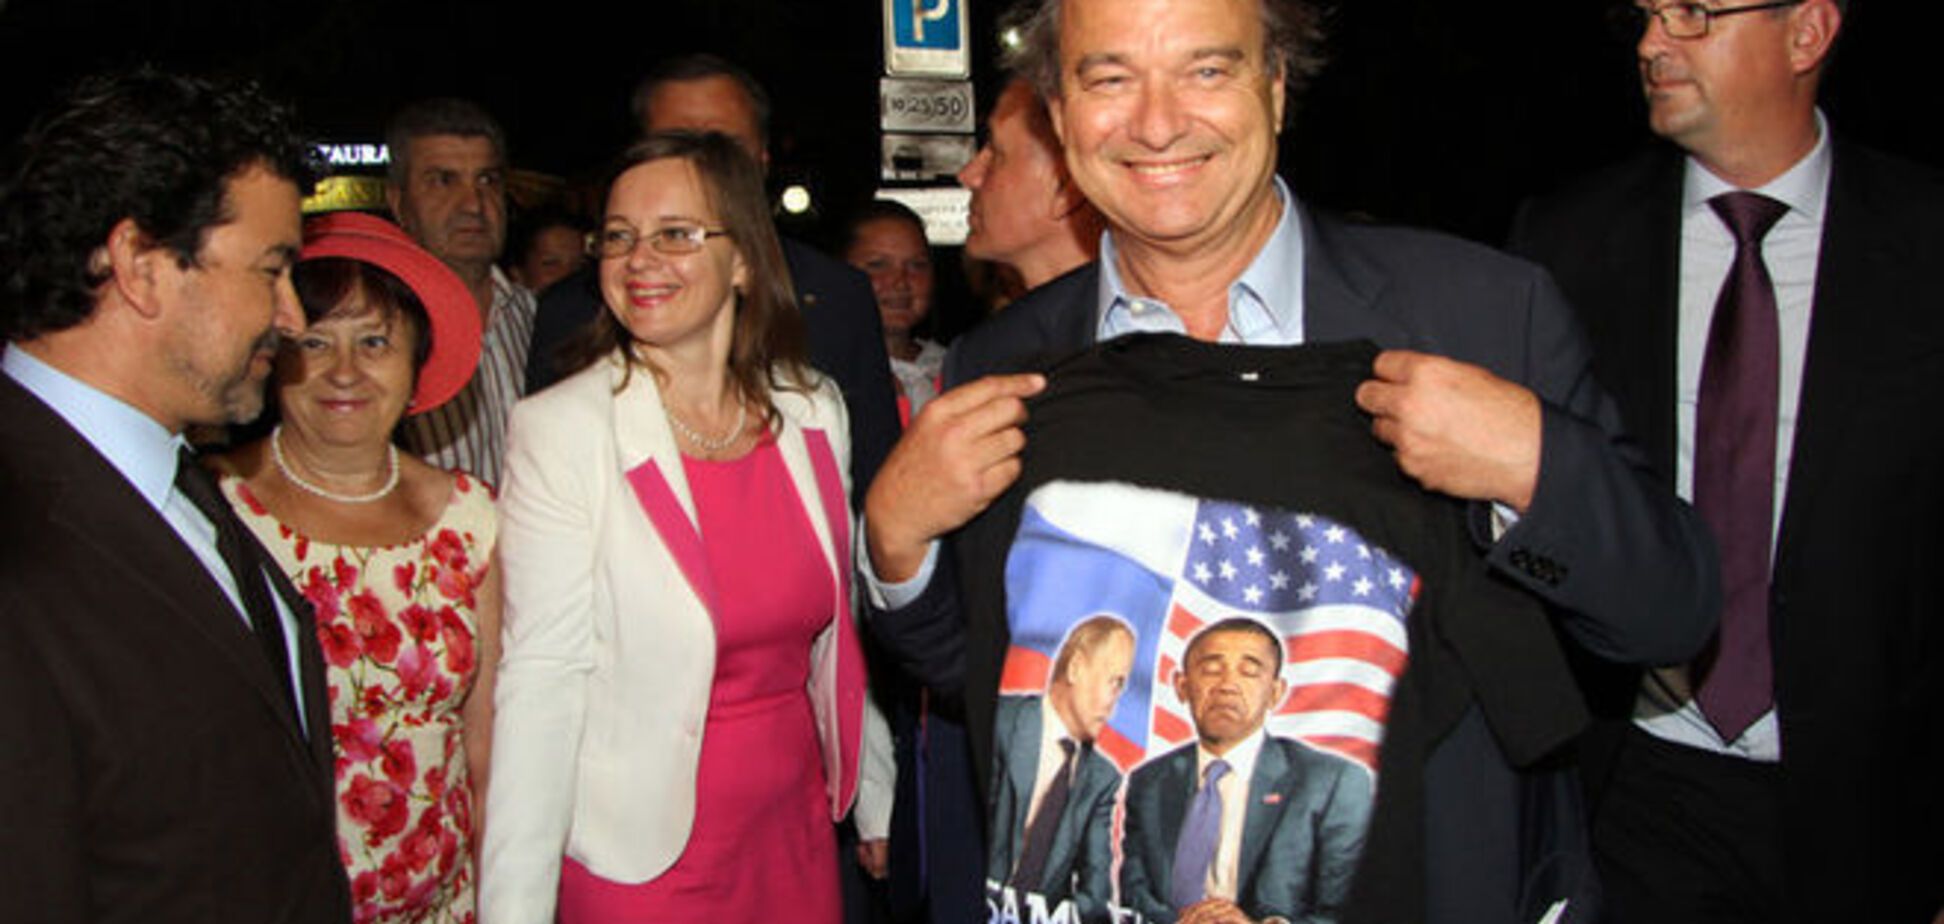 Посетивший Крым француз объяснил оскорбительную футболку с Обамой